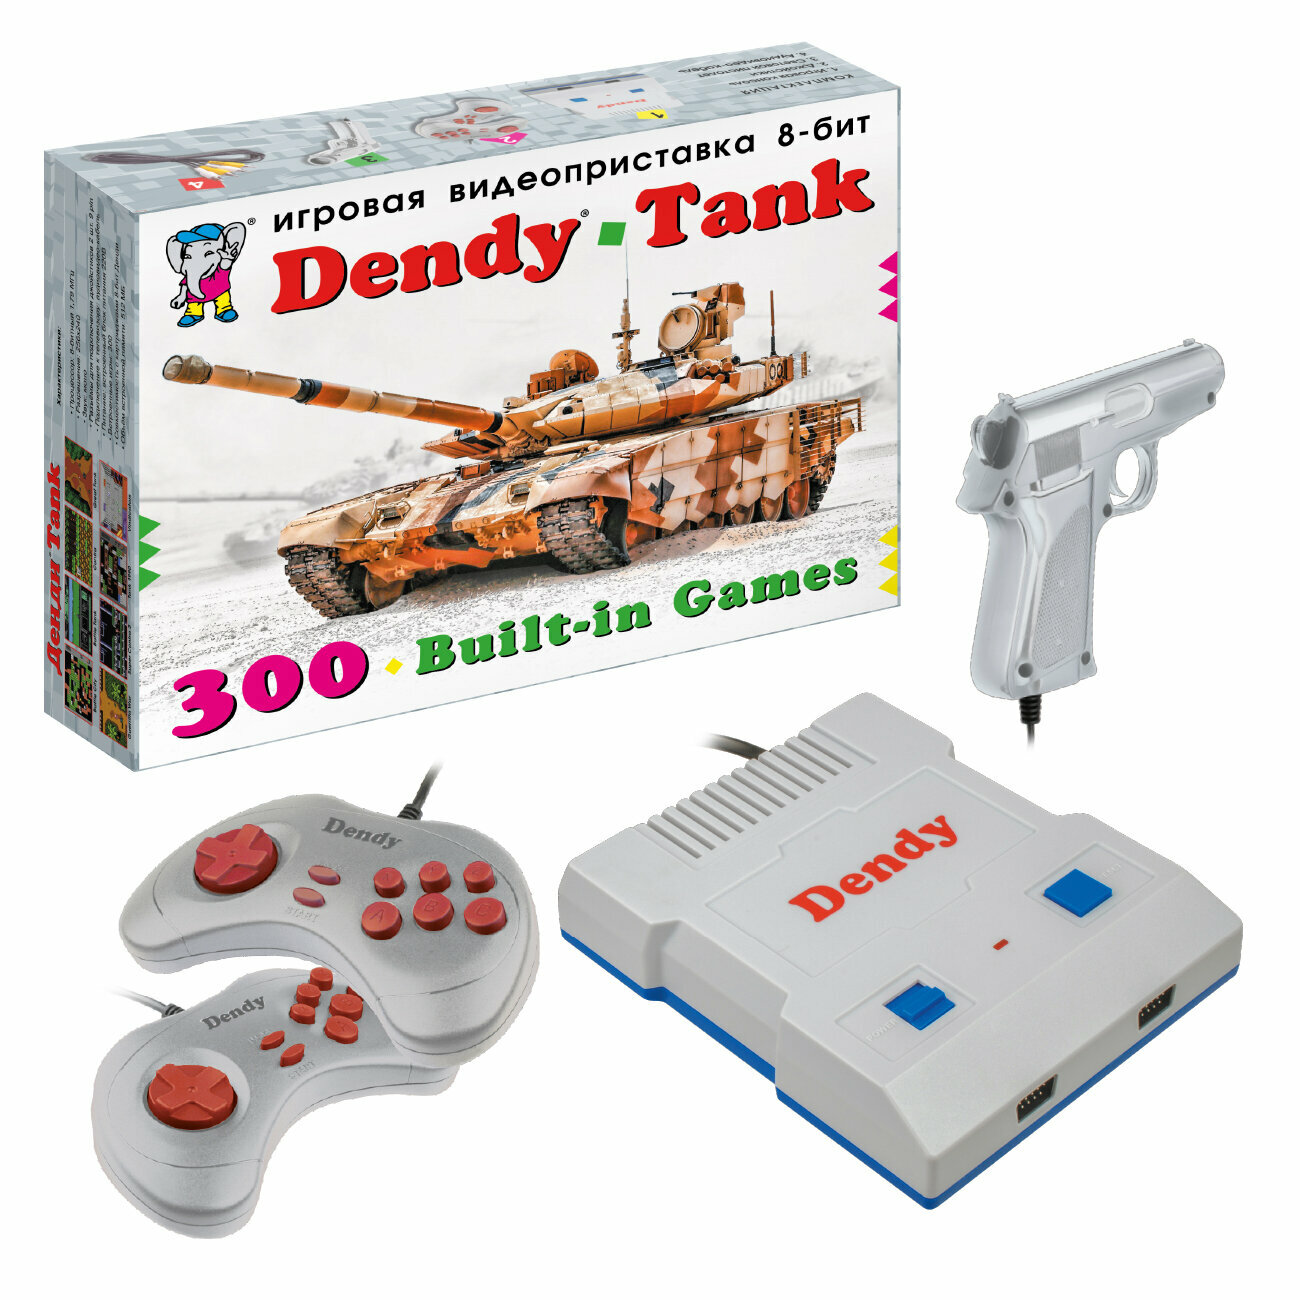 Игровая ретро приставка 8-бит Dendy Tank 300 игр + световой пистолет